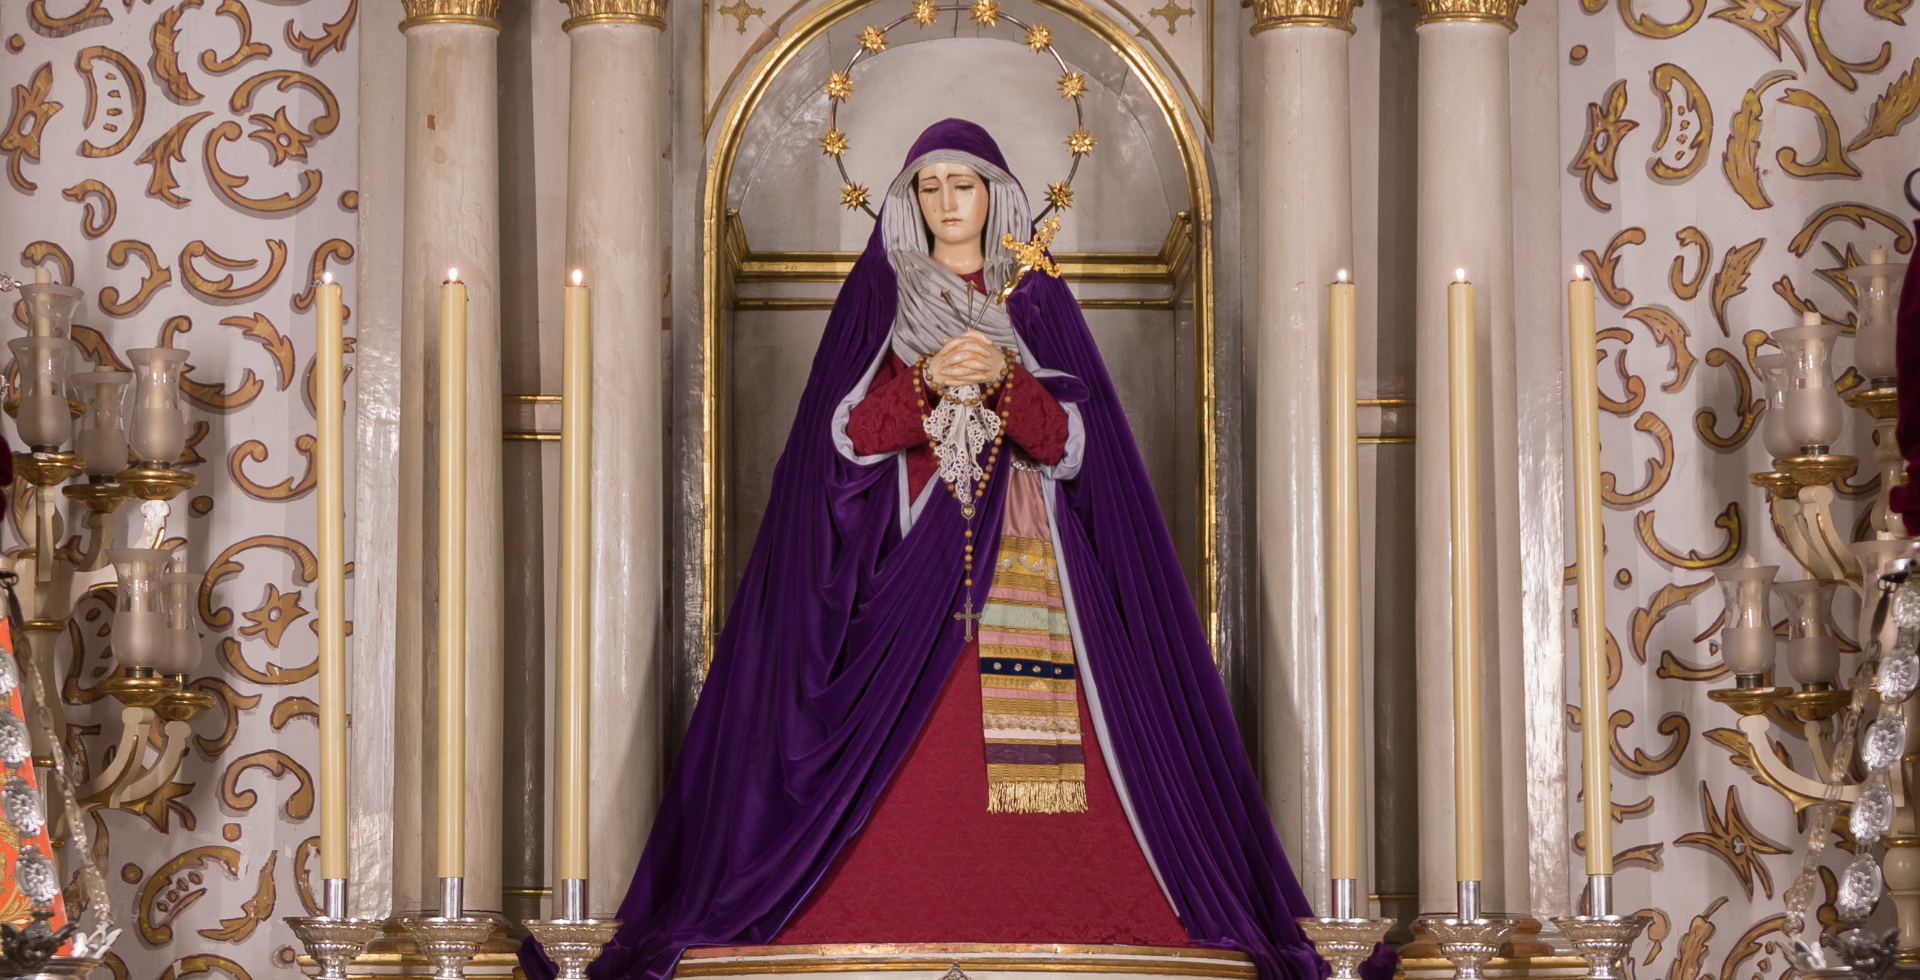 Nuestra Señora, la Virgen de los Dolores de Granada, vestida de hebrea para la Cuaresma. Es una imagen de la Semana Santa de Granada